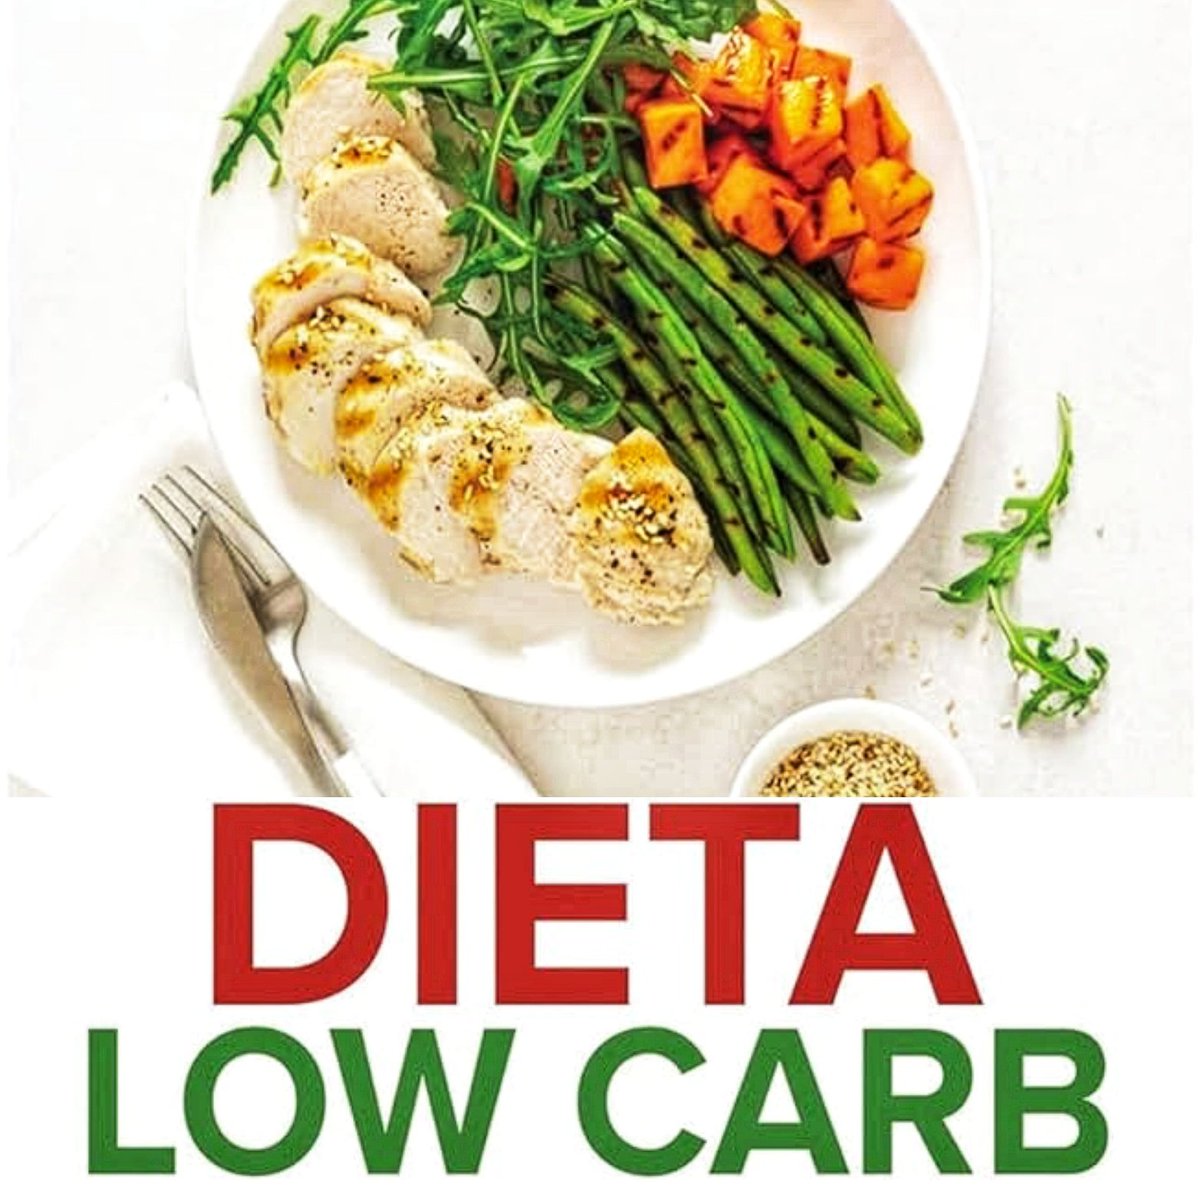 Clicca qui 👇tormenti.altervista.org/dieta-low-carb…

#dieta #lowcarb